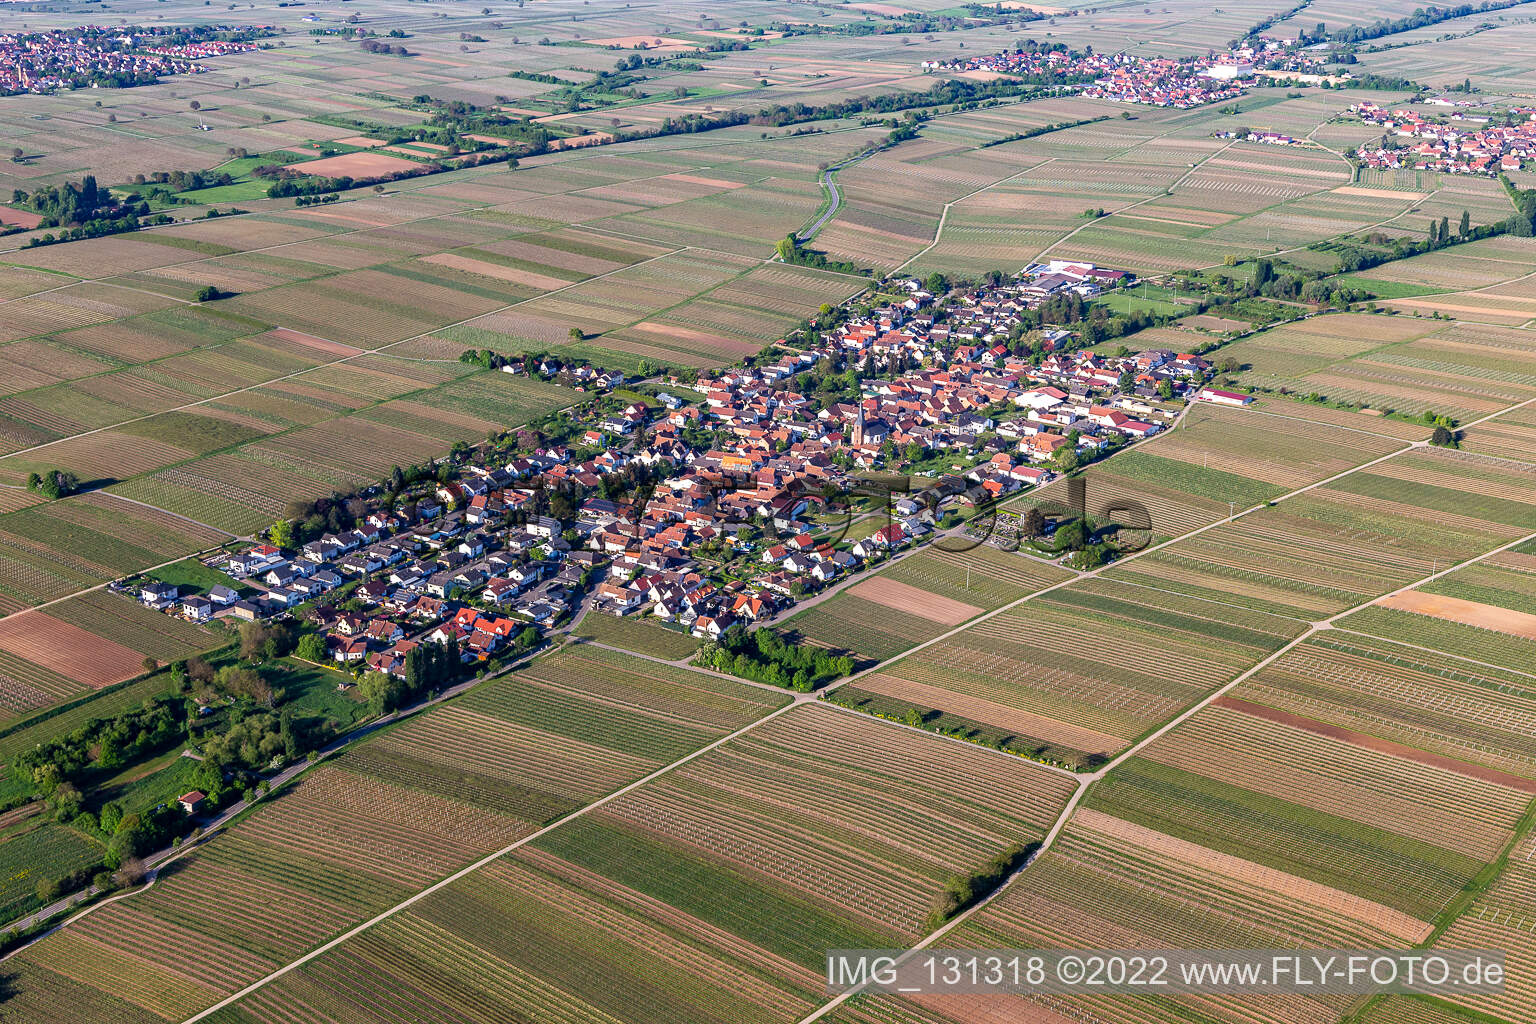 Roschbach im Bundesland Rheinland-Pfalz, Deutschland aus der Luft betrachtet